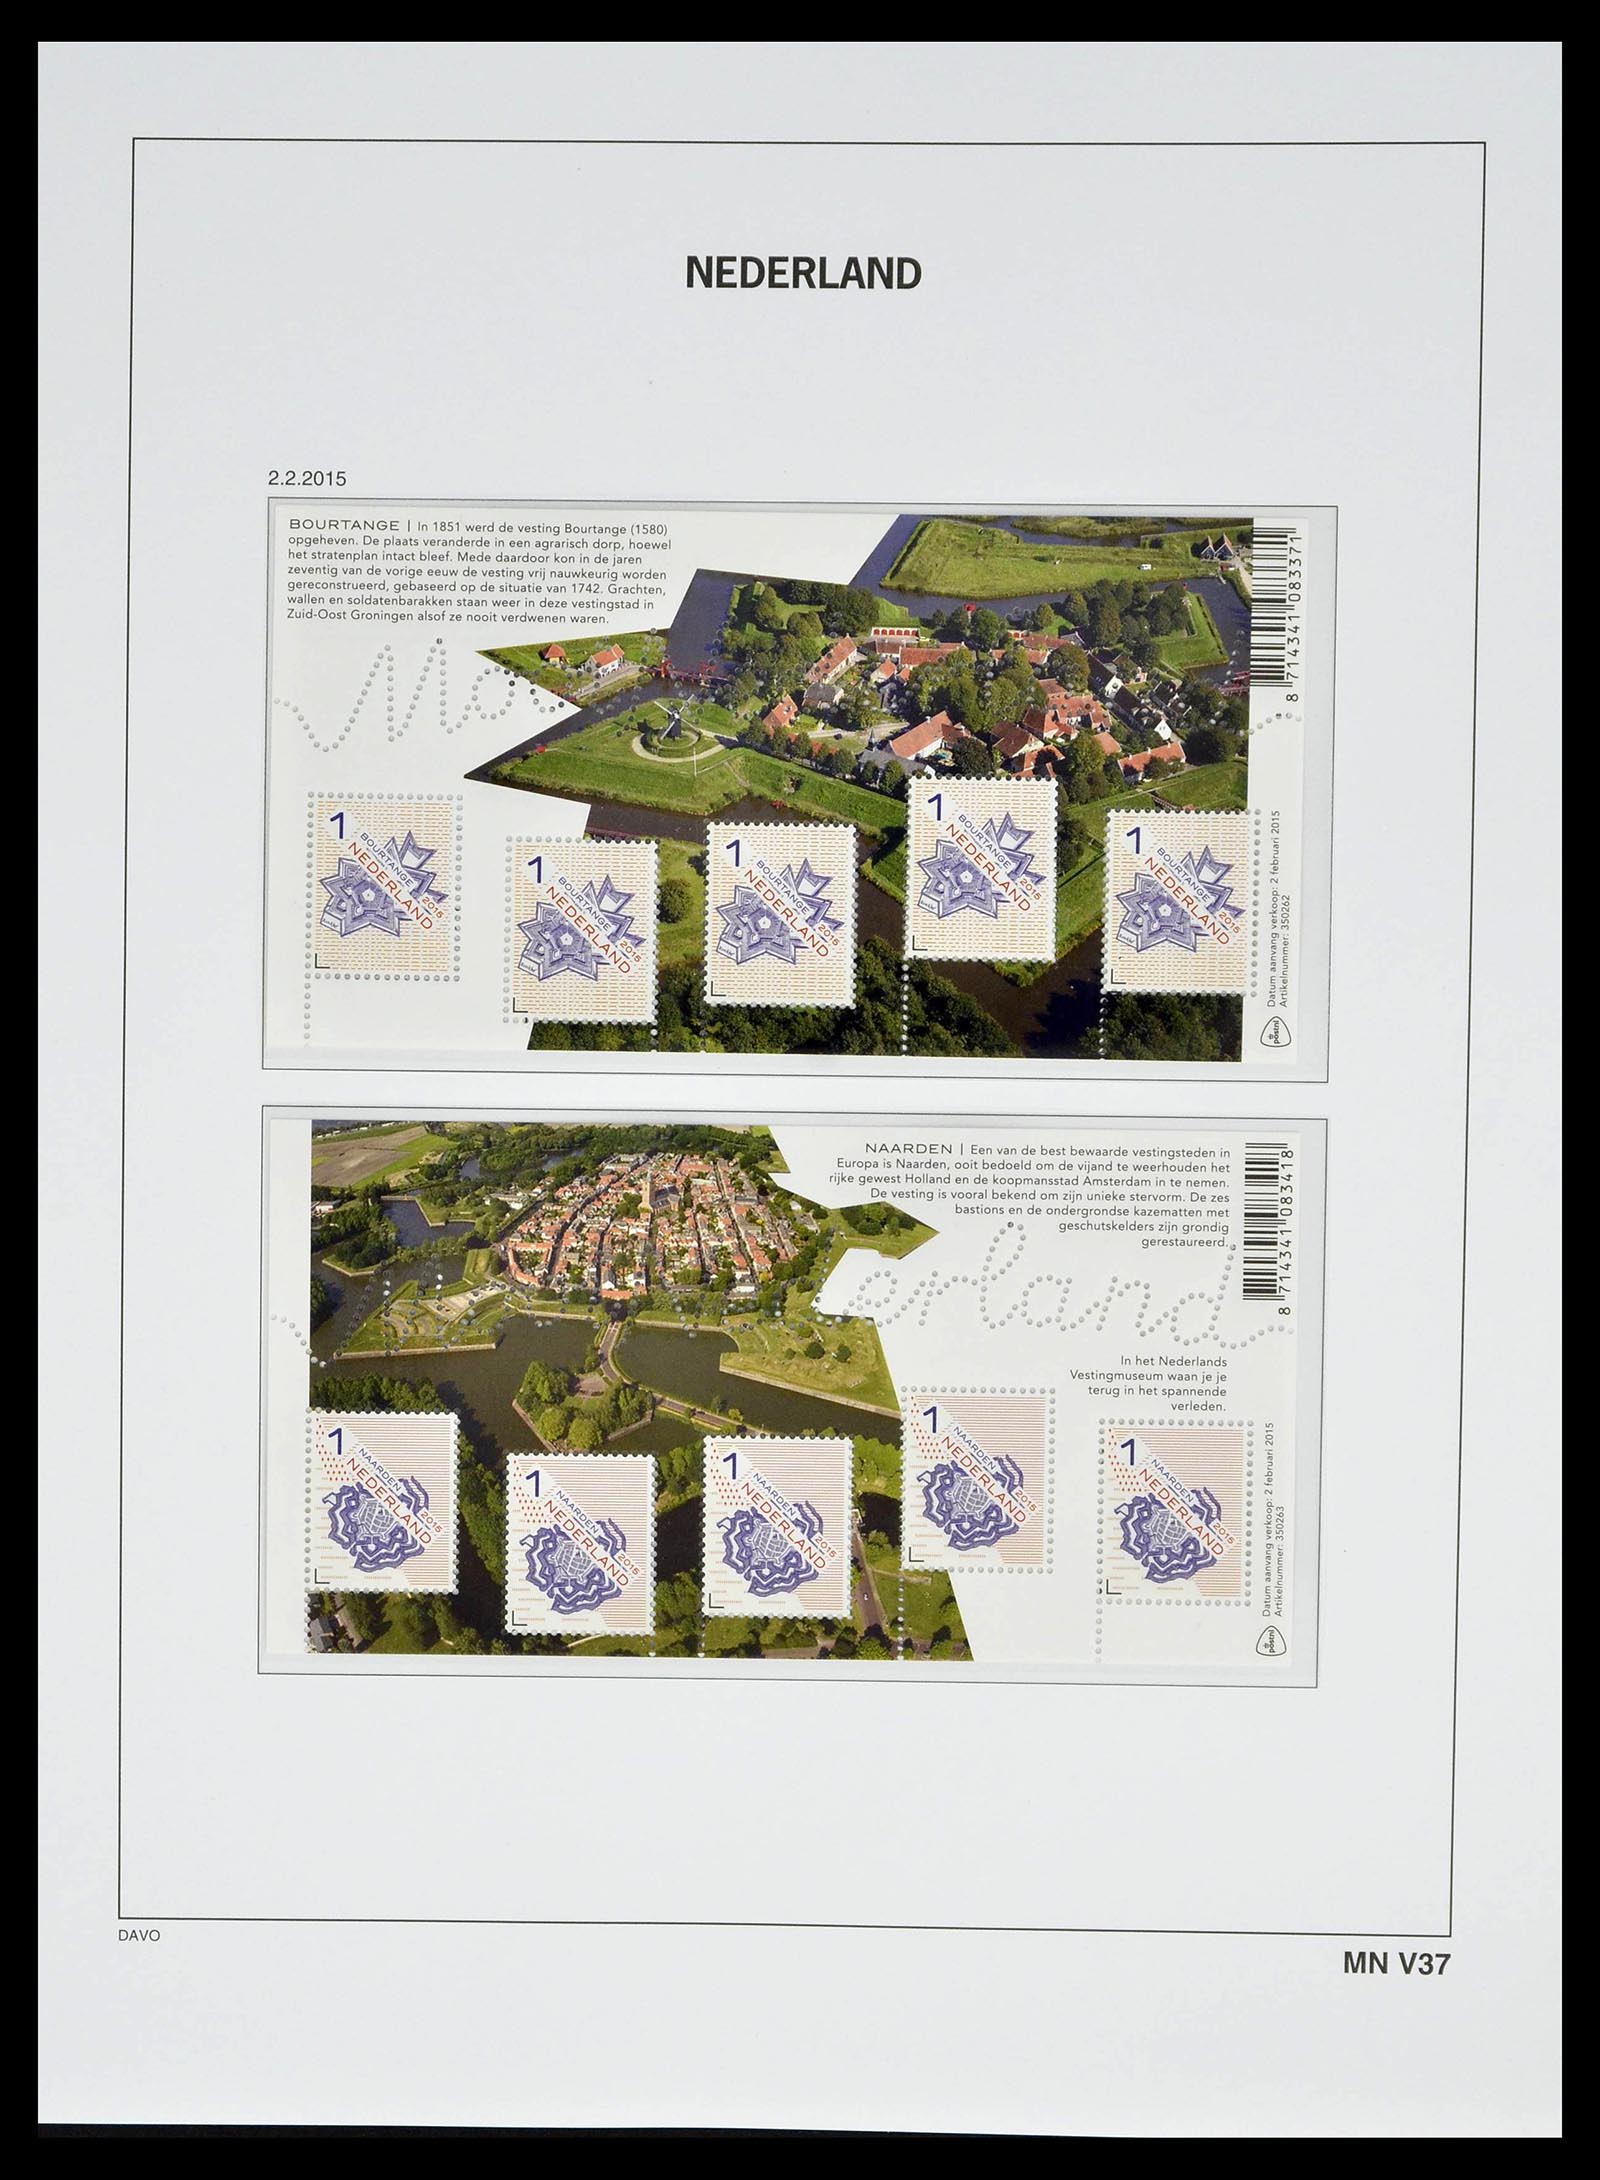 39134 0256 - Stamp collection 39134 Netherlands sheetlets 1992-2019!